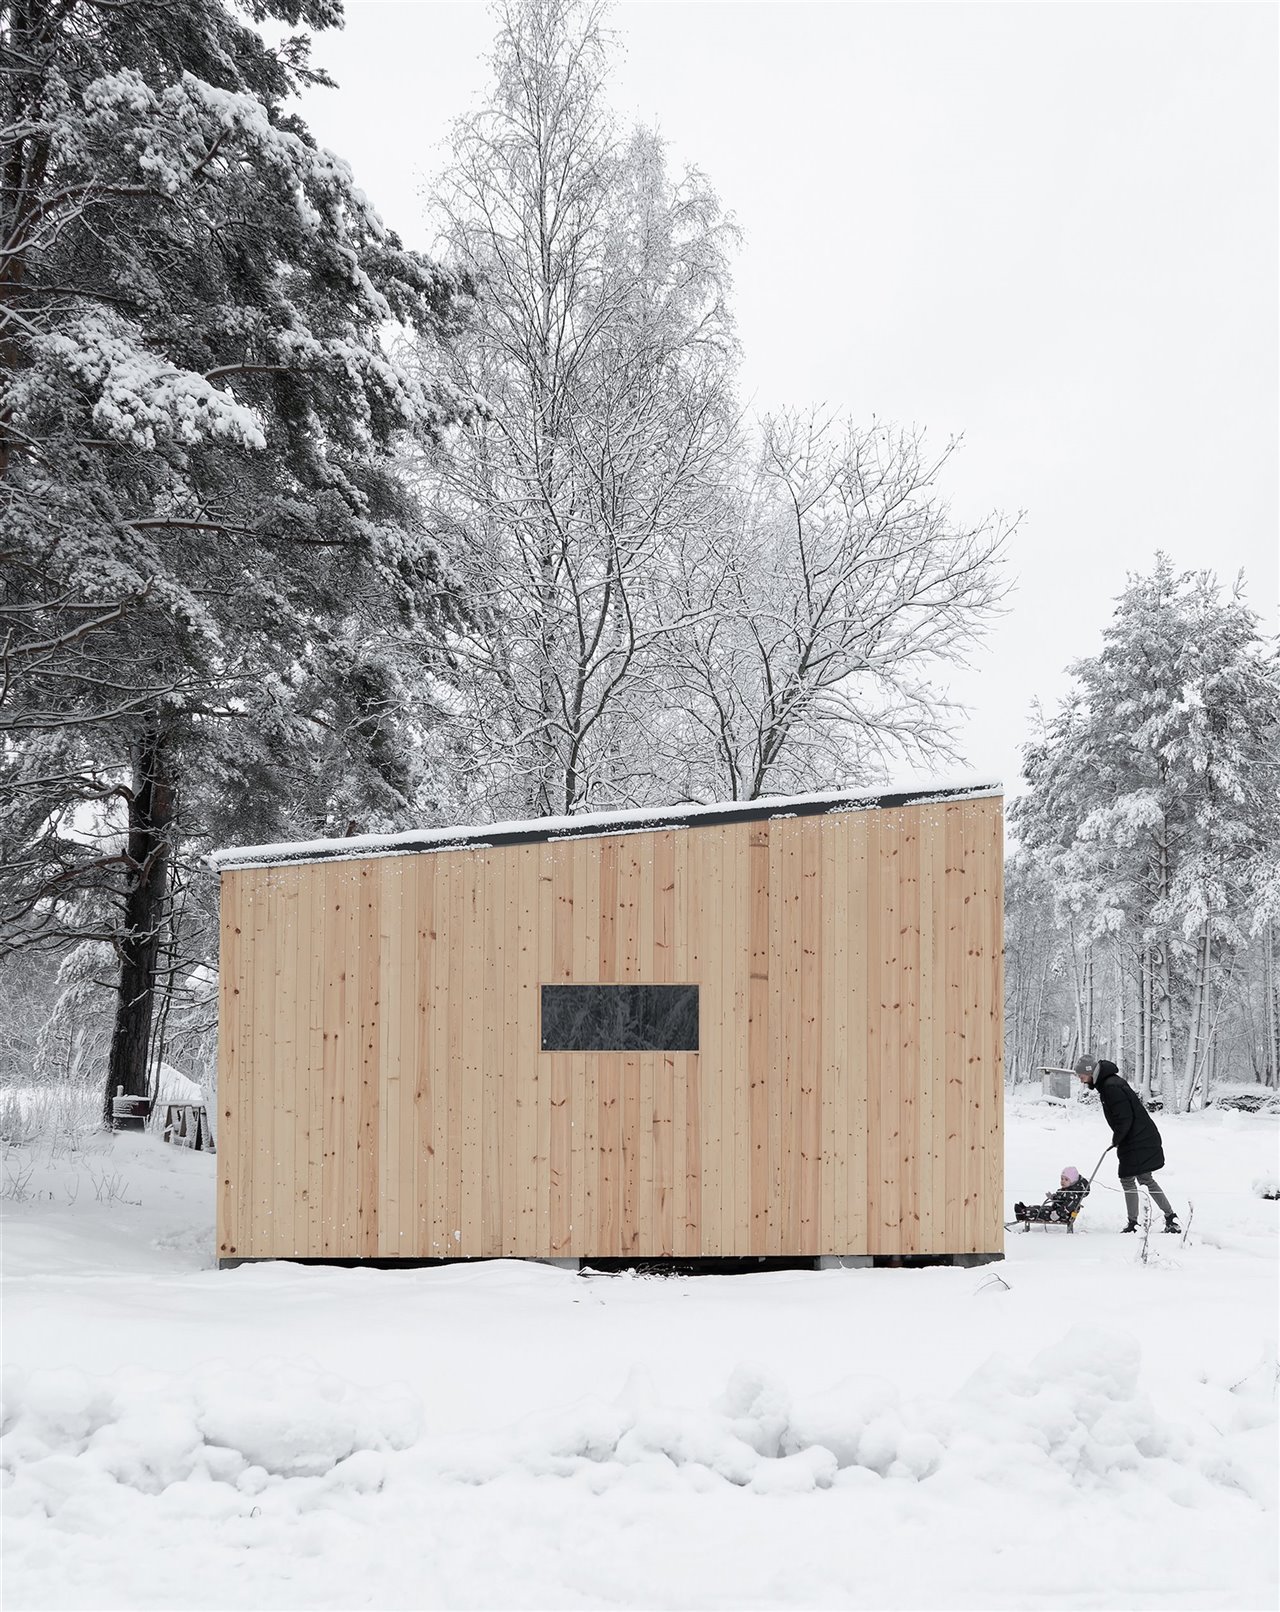 De diseño minimalista, el interior de la cabaña es cómodo, cálido y está totalmente equipado para sus habitantes.